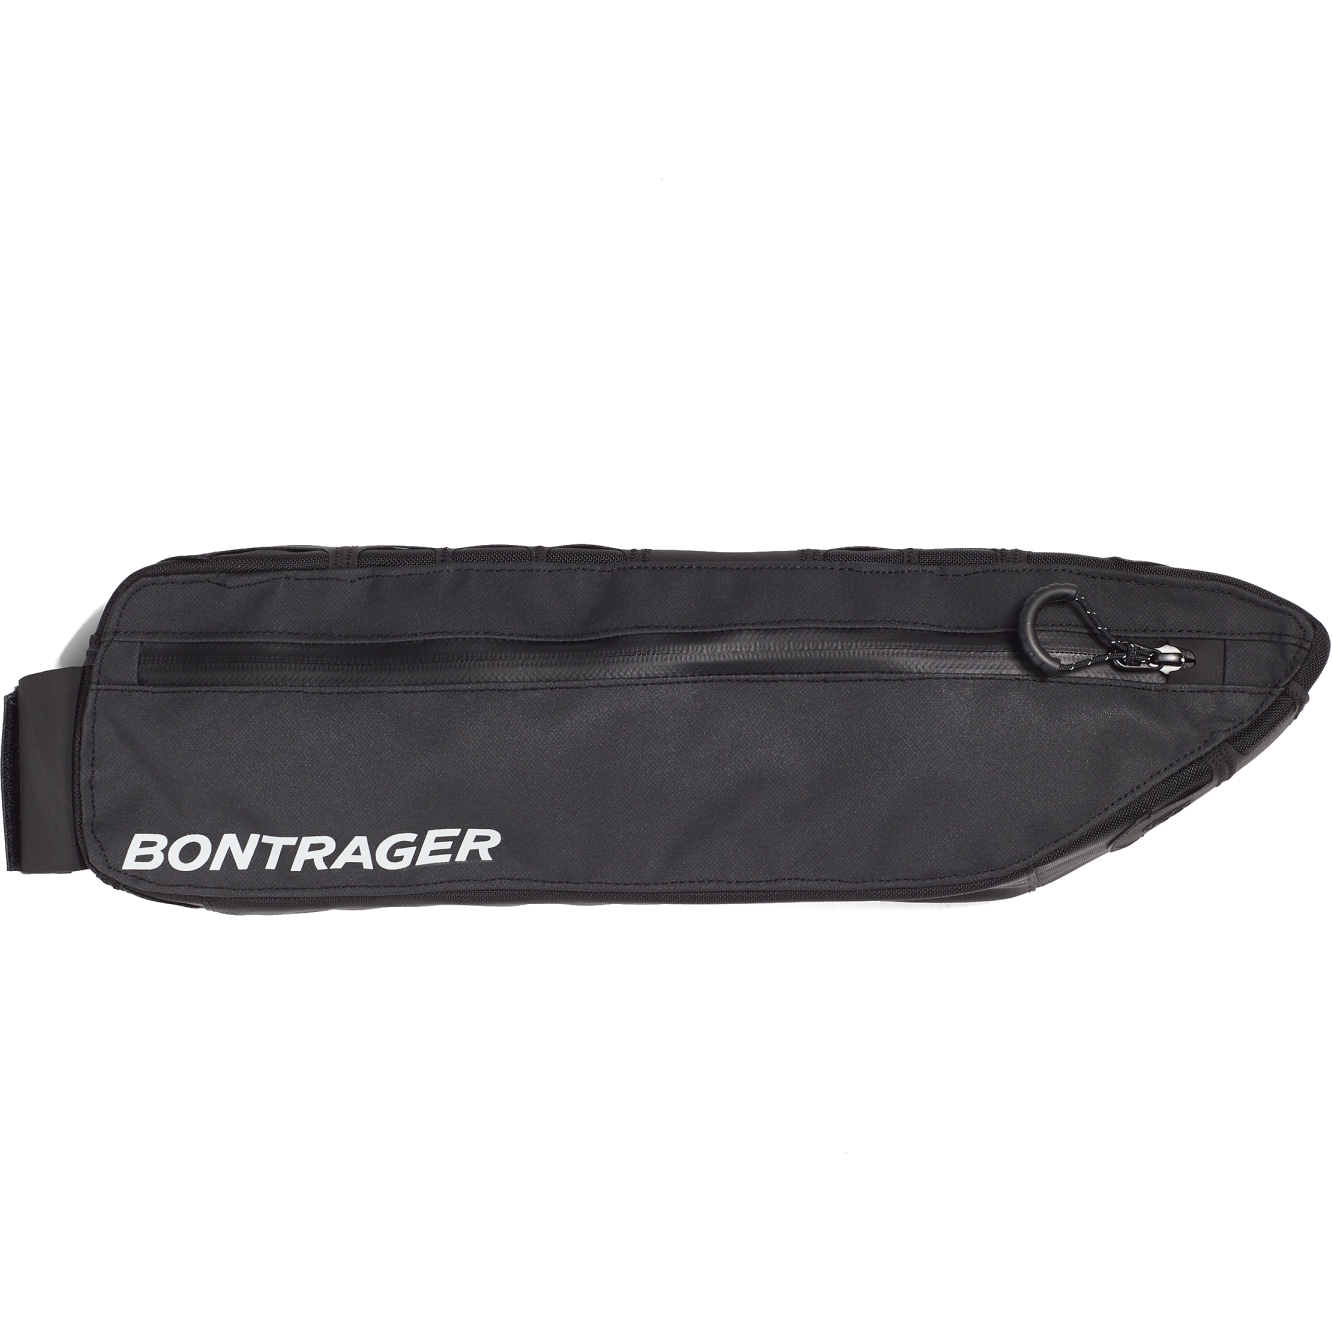 Produktbild von Bontrager Adventure Boss Rahmentasche - 42cm - 1.3L